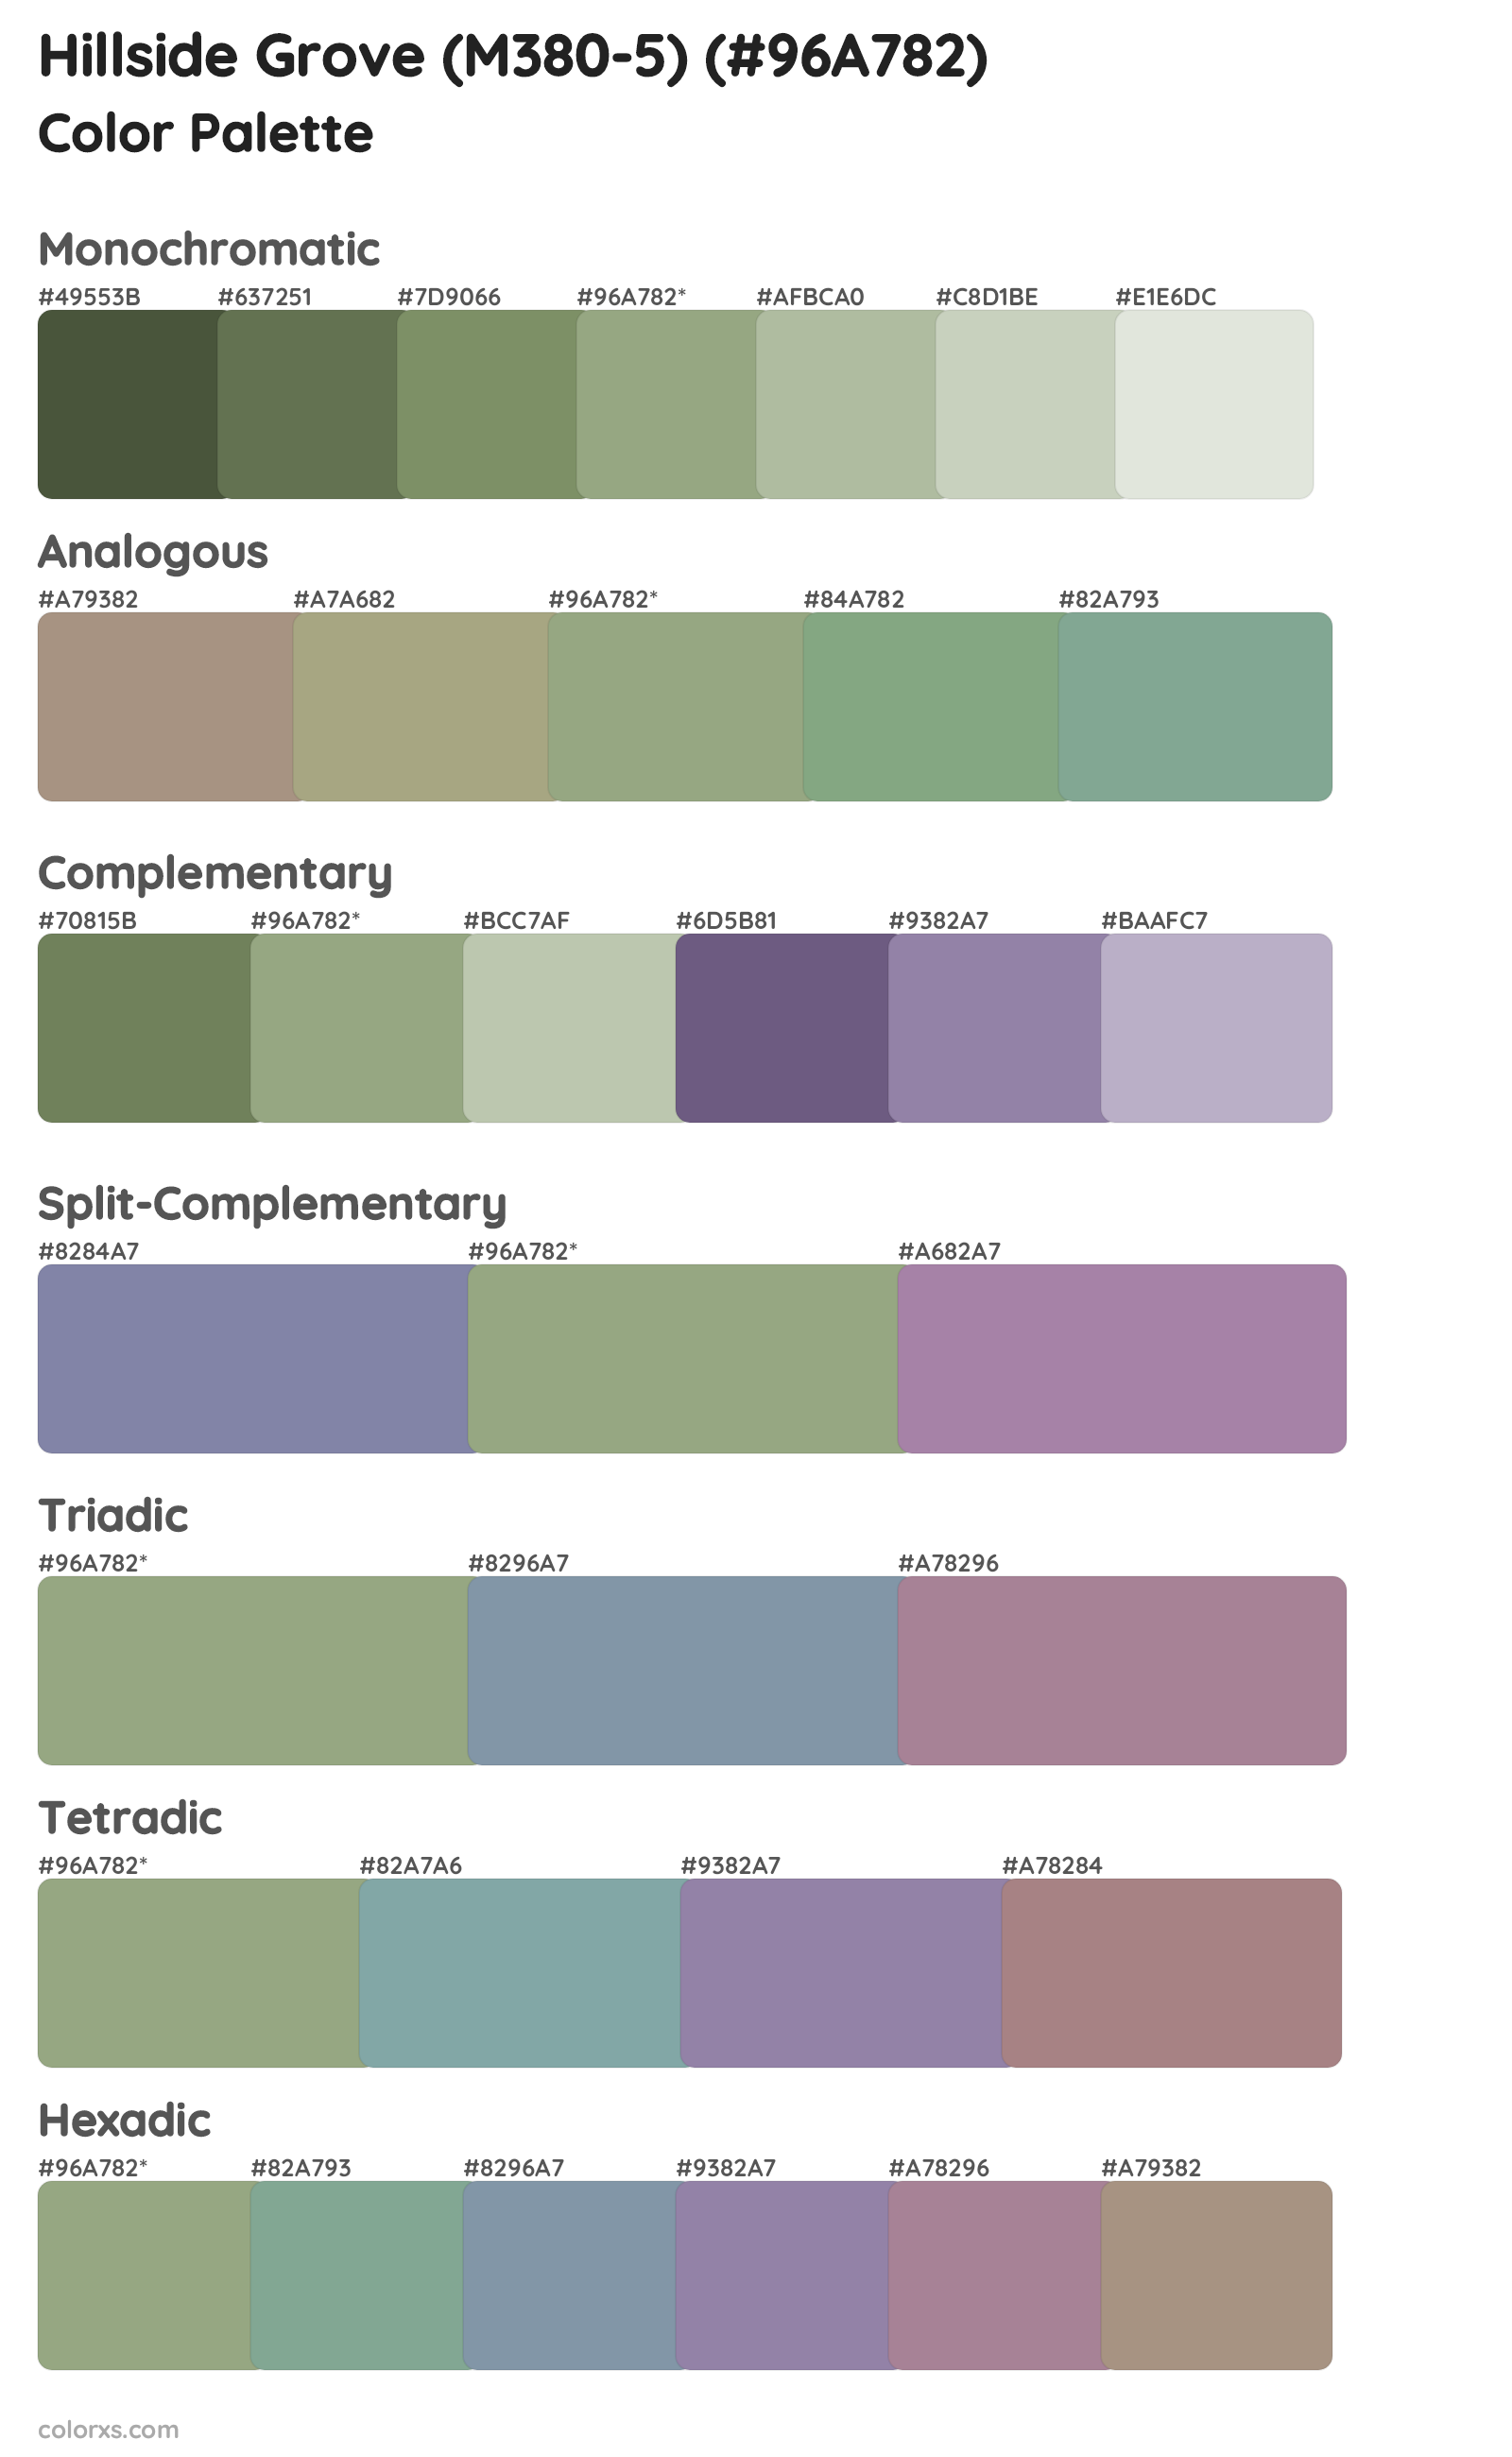 Hillside Grove (M380-5) Color Scheme Palettes